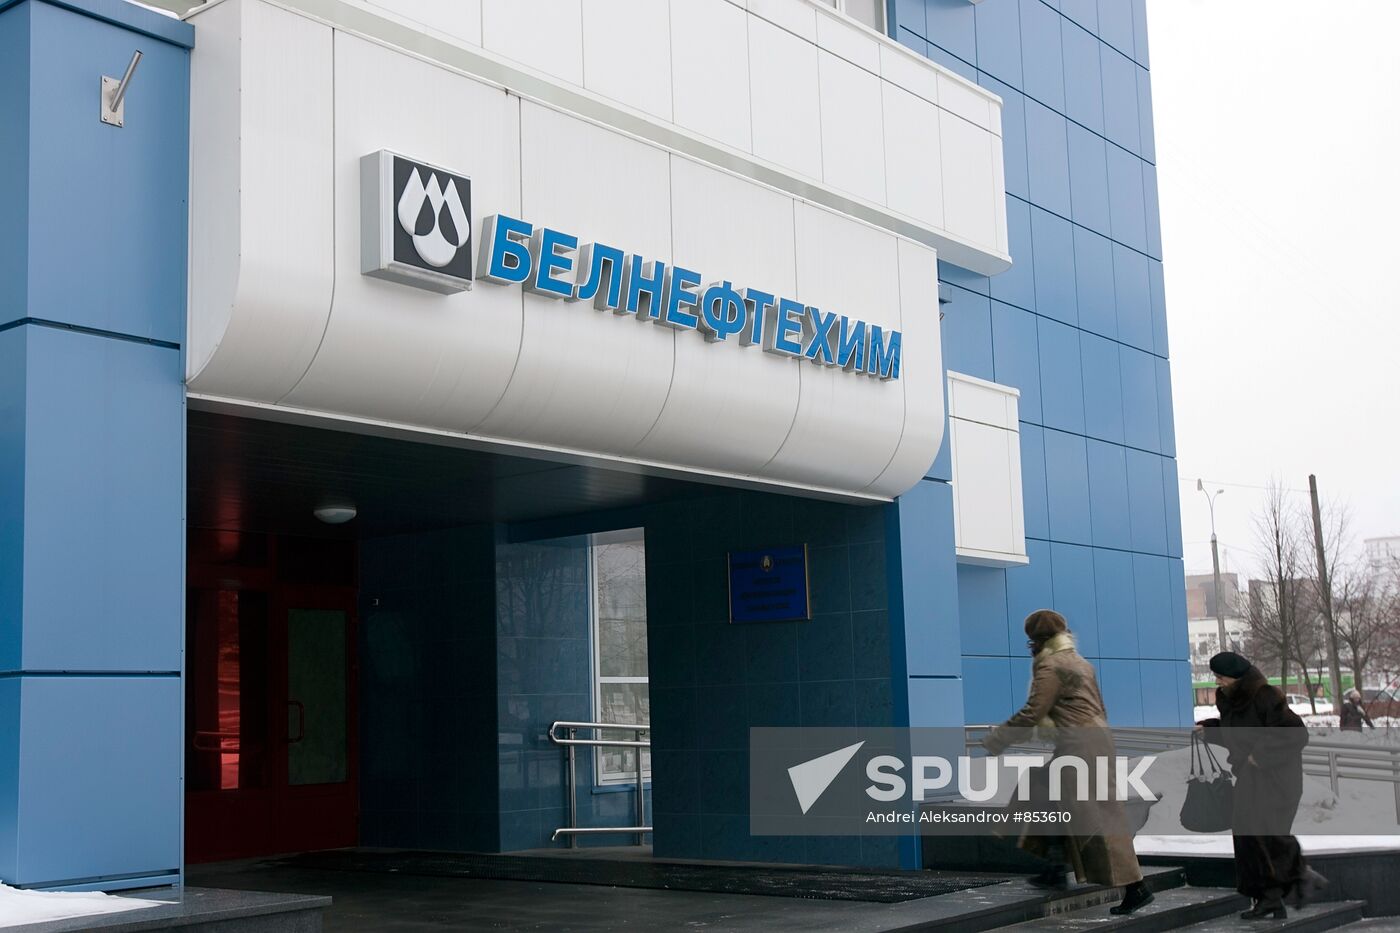 Belneftkhim head office